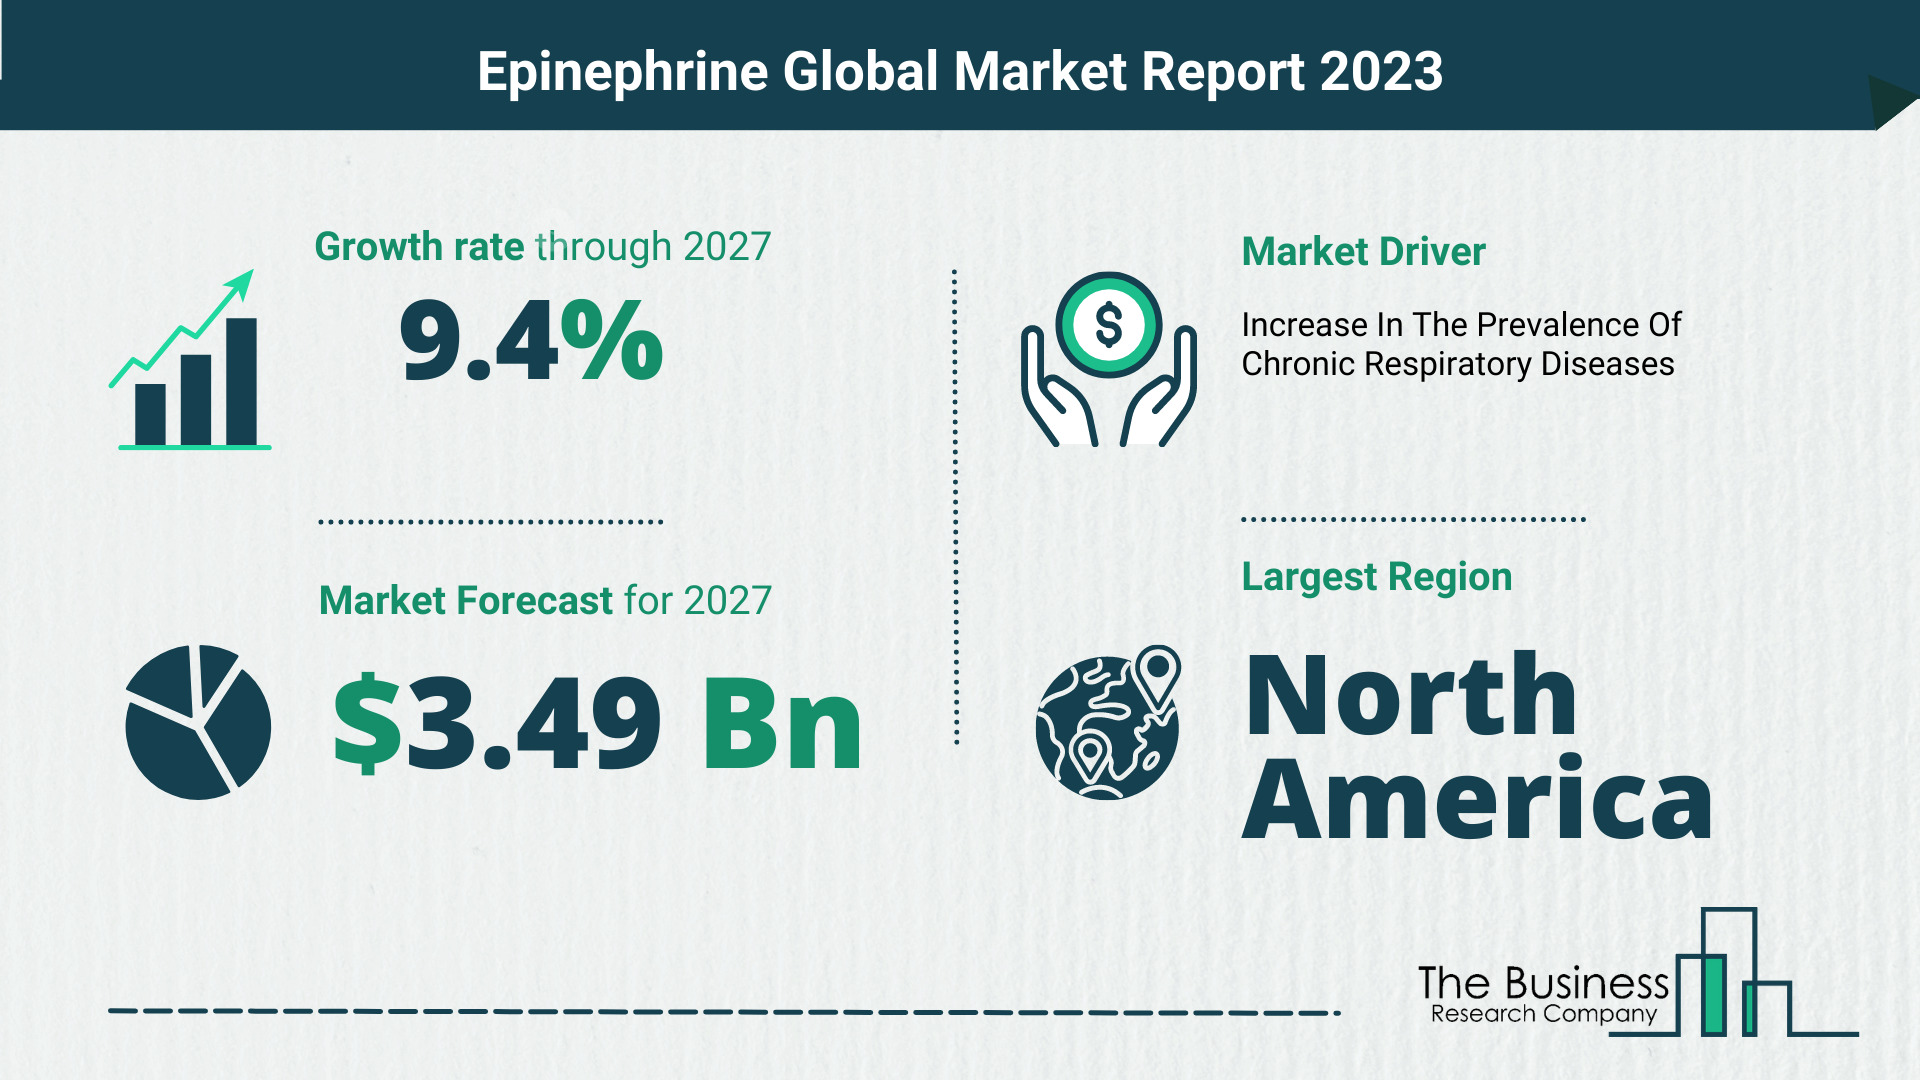 Global Epinephrine Market